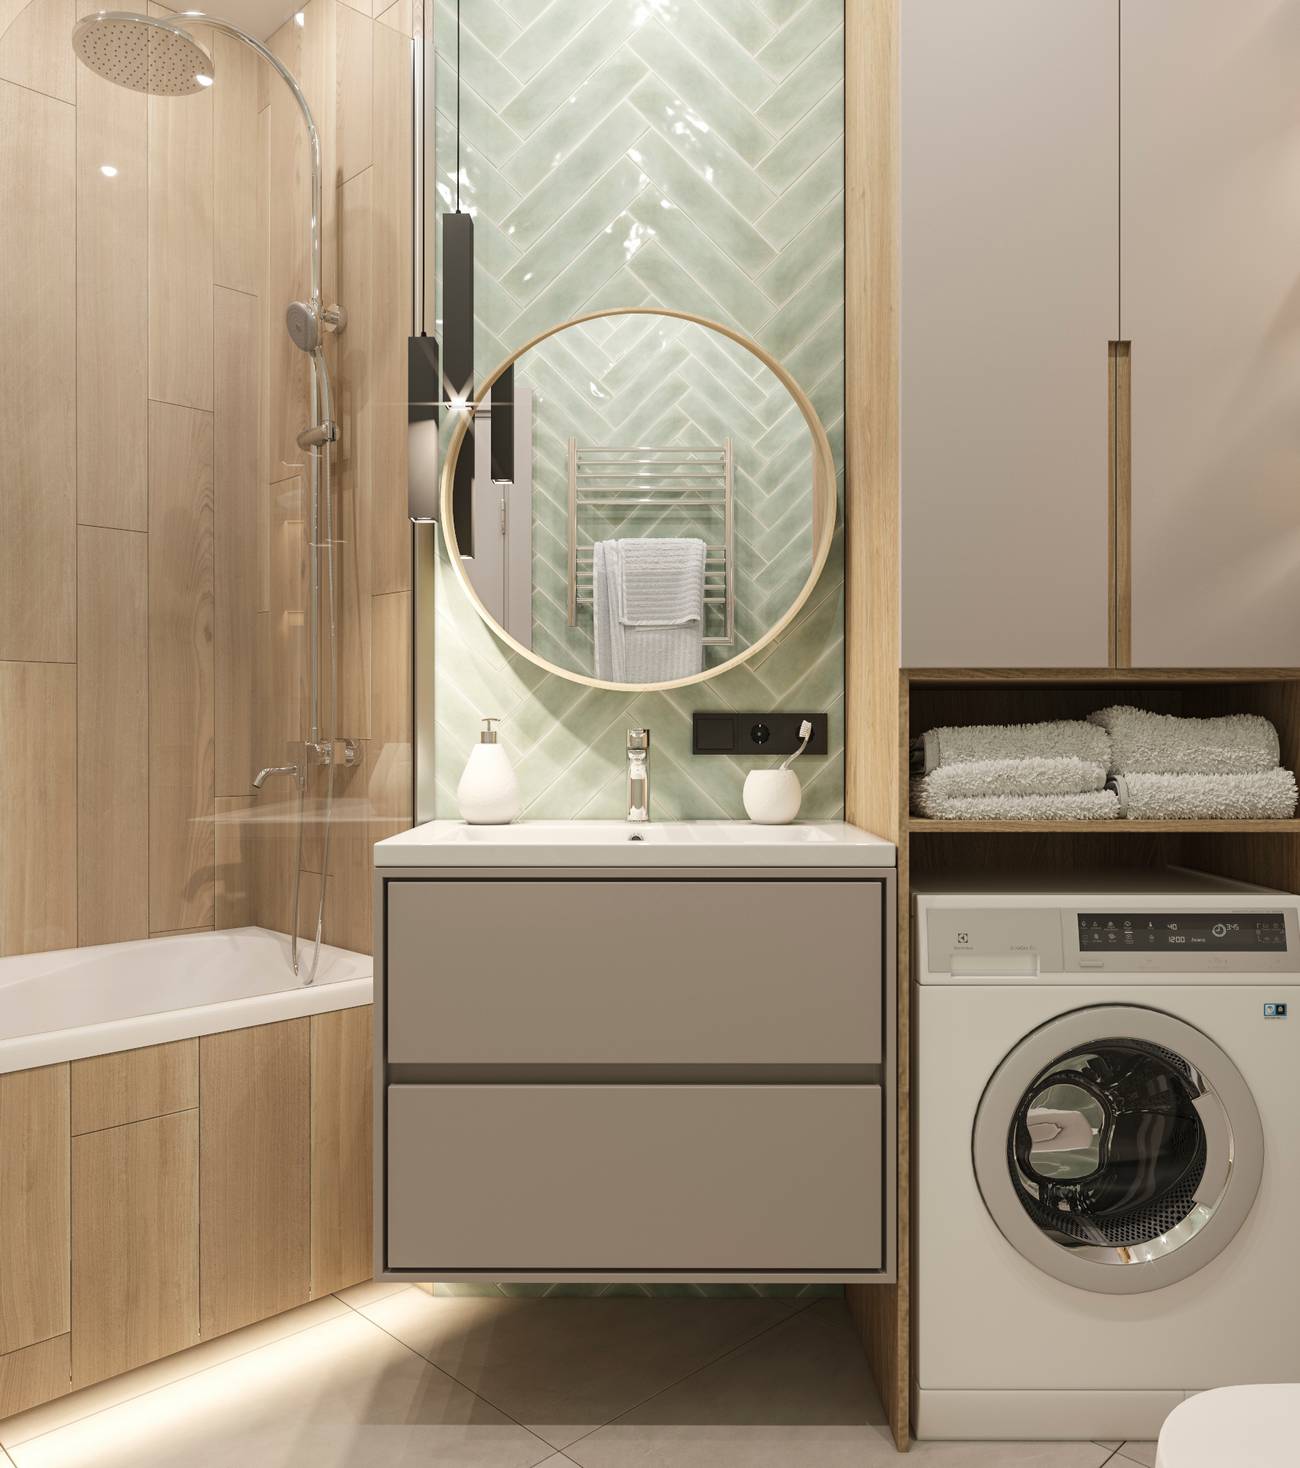 Phòng vệ sinh và phòng tắm dành cho hai vợ chồng sử dụng gỗ tự nhiên, gam màu trắng và gạch ốp màu xanh bạc hà bóng loáng. Máy giặt được tích hợp bên dưới tủ lưu trữ một cách gọn gàng.